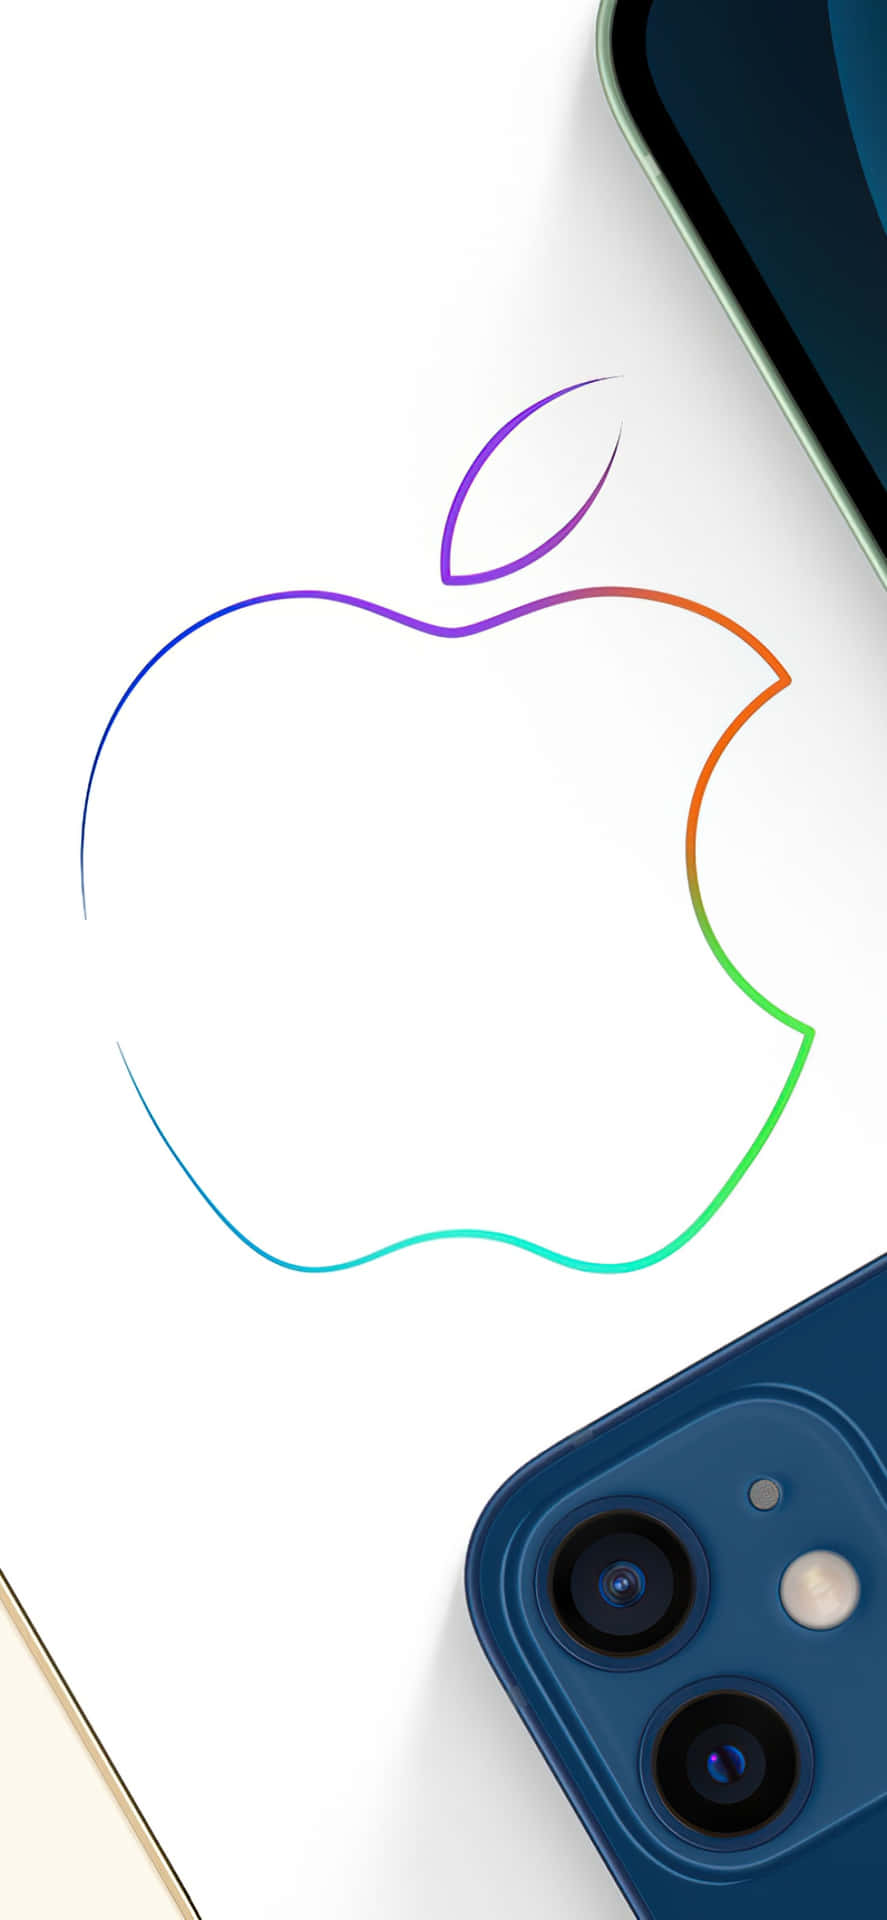 Iphone Xs Max Apple Baggrundsfarve Farverig Outline.